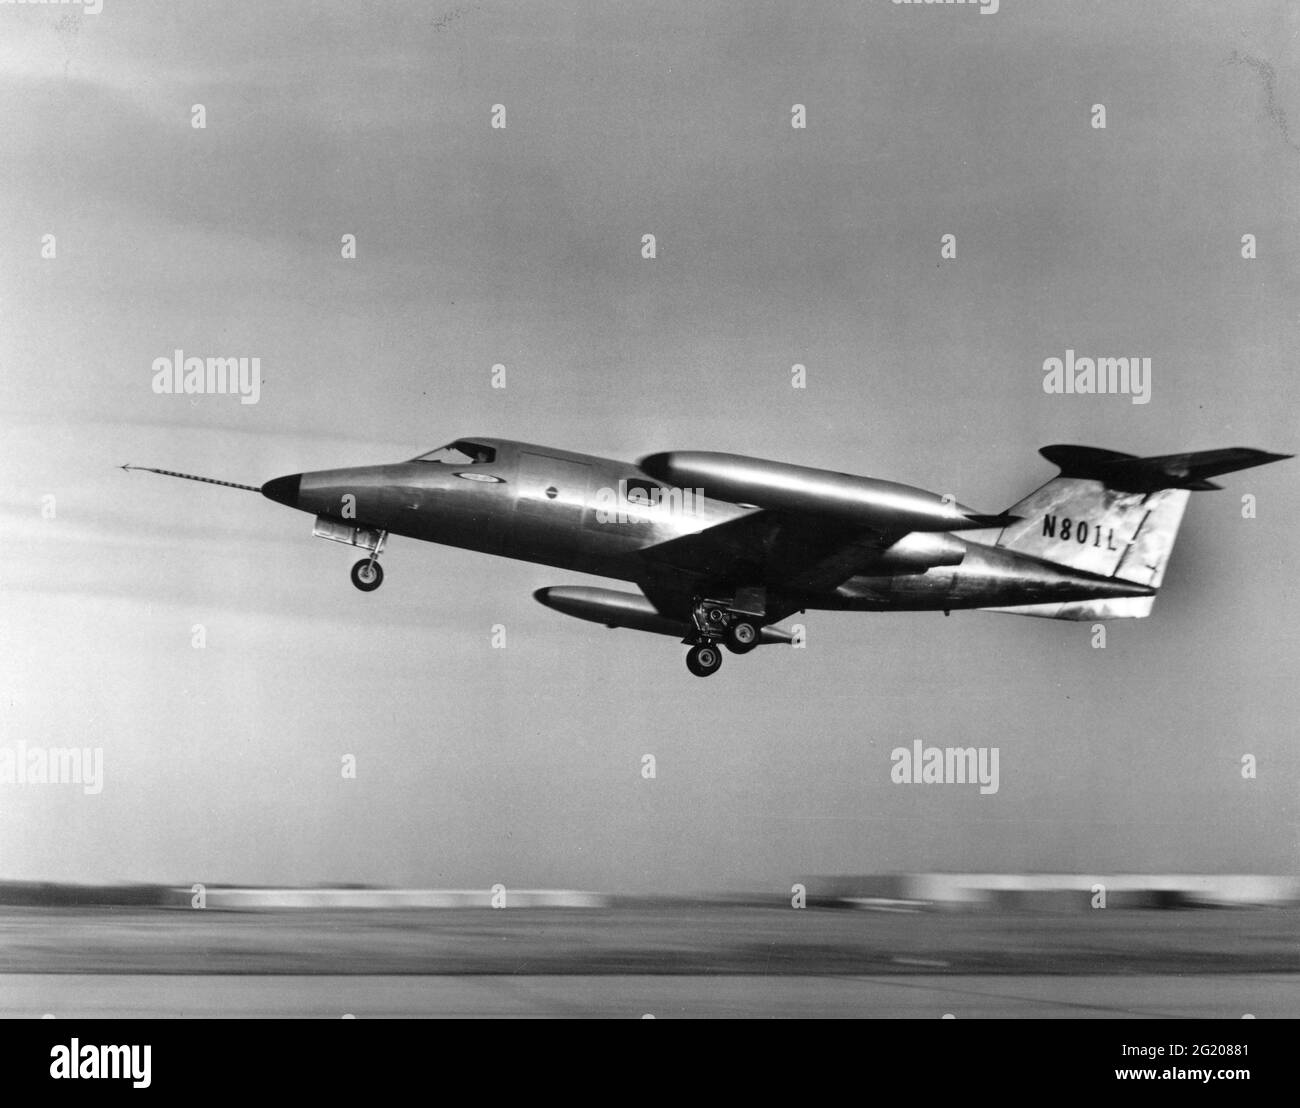 Uno de los primeros aviones privados de lujo, el Learjet 23, número de serie 23-001 (N801L) despegará en su primer vuelo, Wichita, KS, 10/7/1963. (Foto de la Administración Federal de Aviación/RBM Vintage Images) Foto de stock